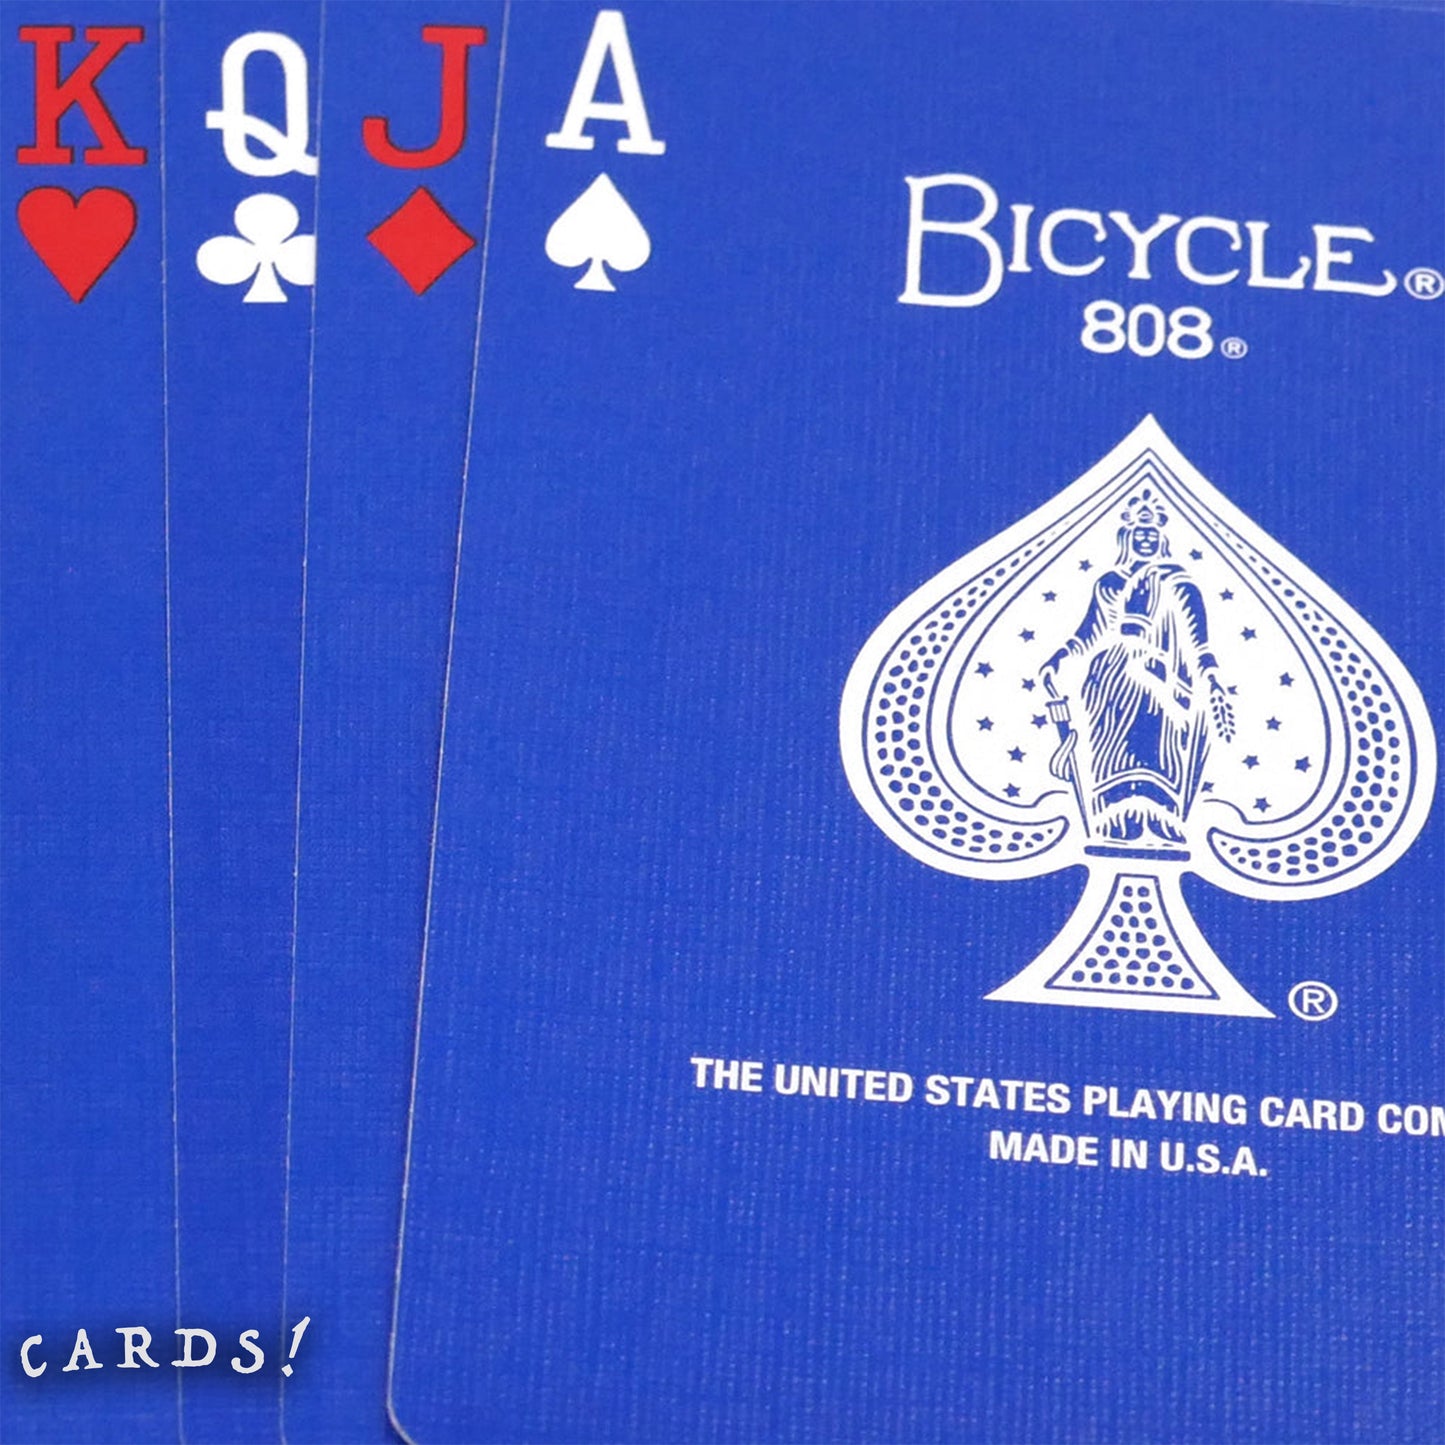 Bicycle® 藍色卡 啤牌 撲克牌